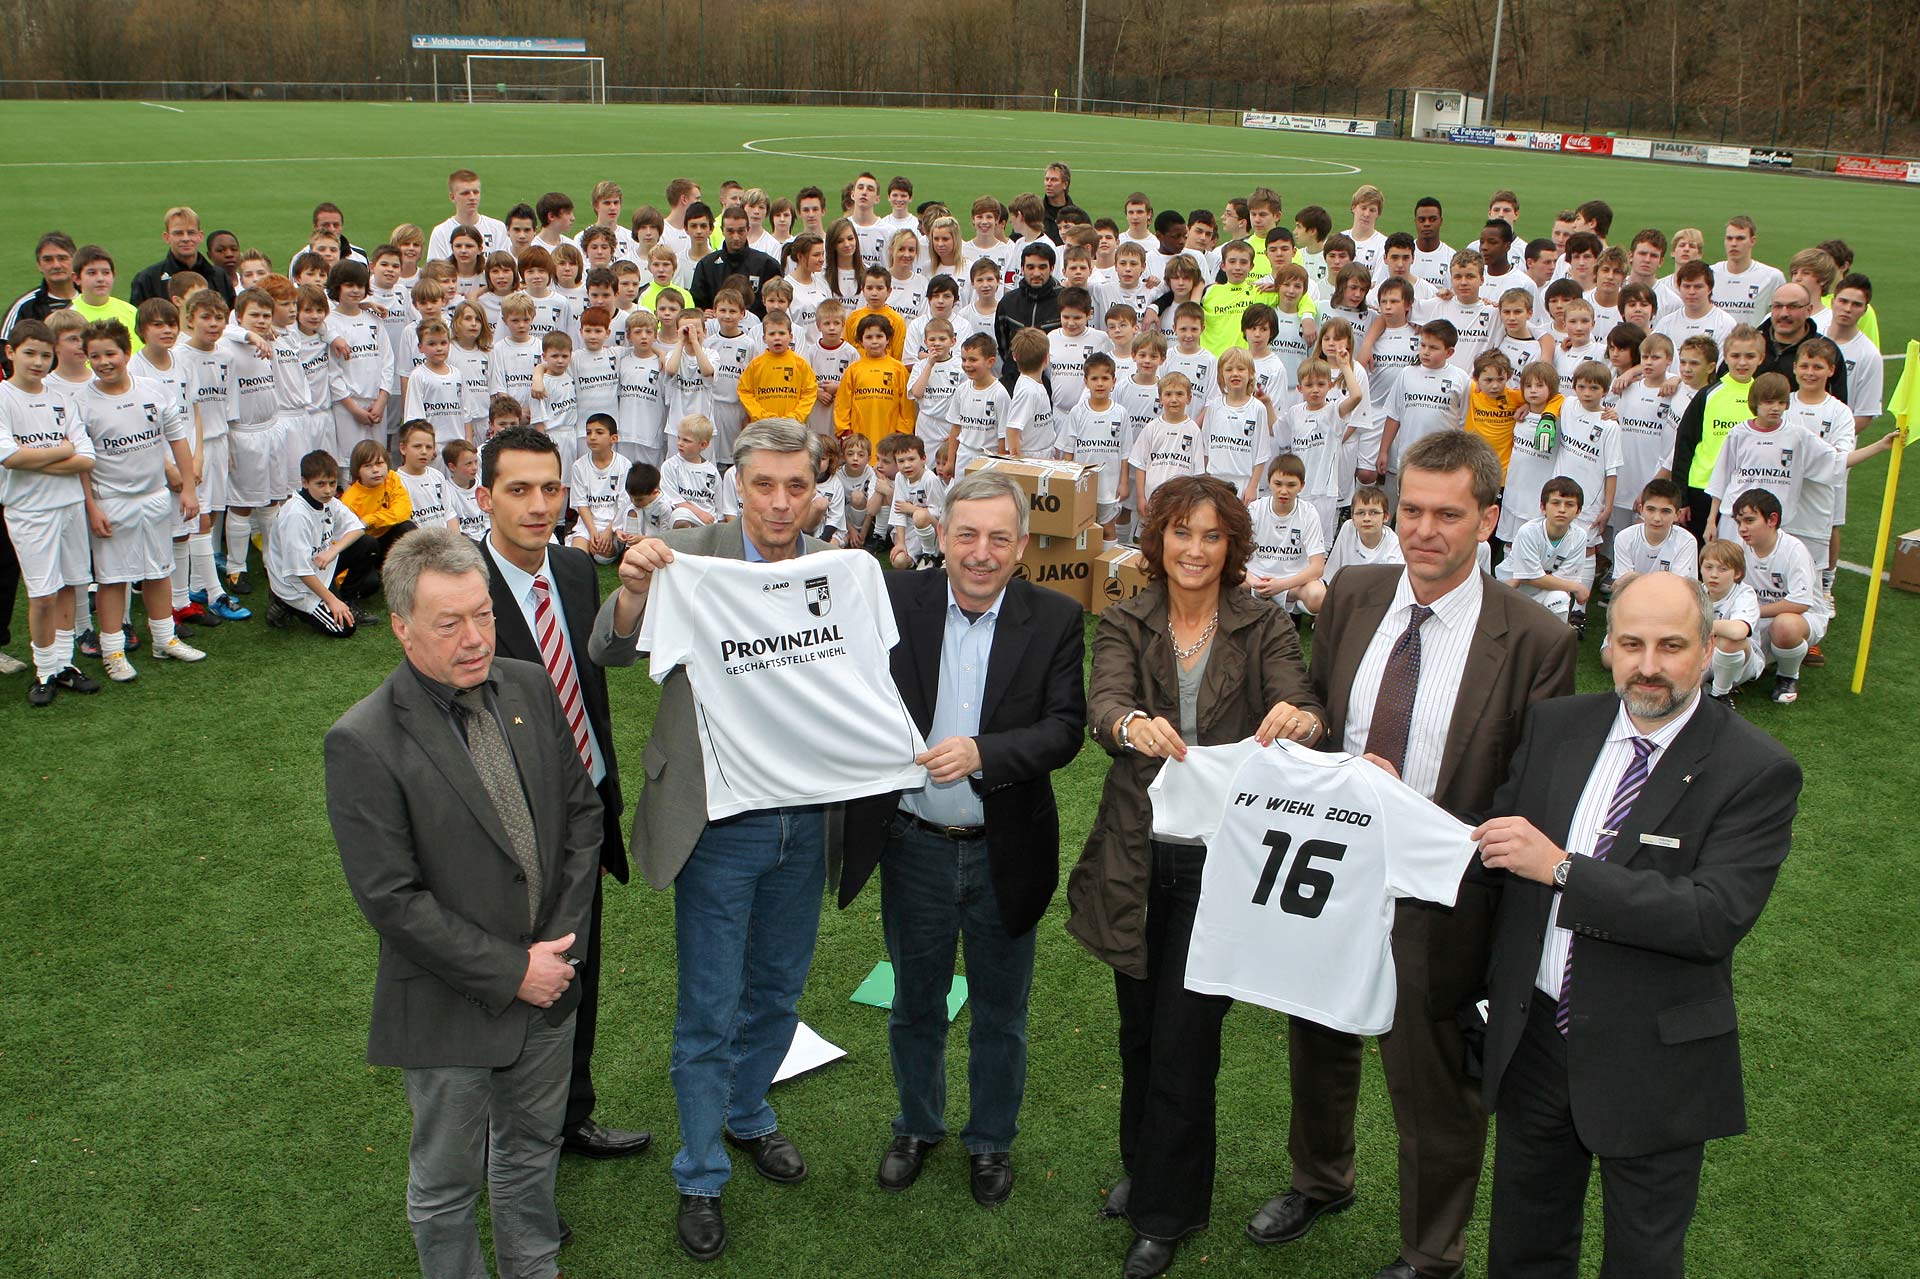 Große Freude bei den Jugendmannschaften des FV Wiehl: Provinzial Rheinland übergab Trikotsätze für alle Jugendmannschaften